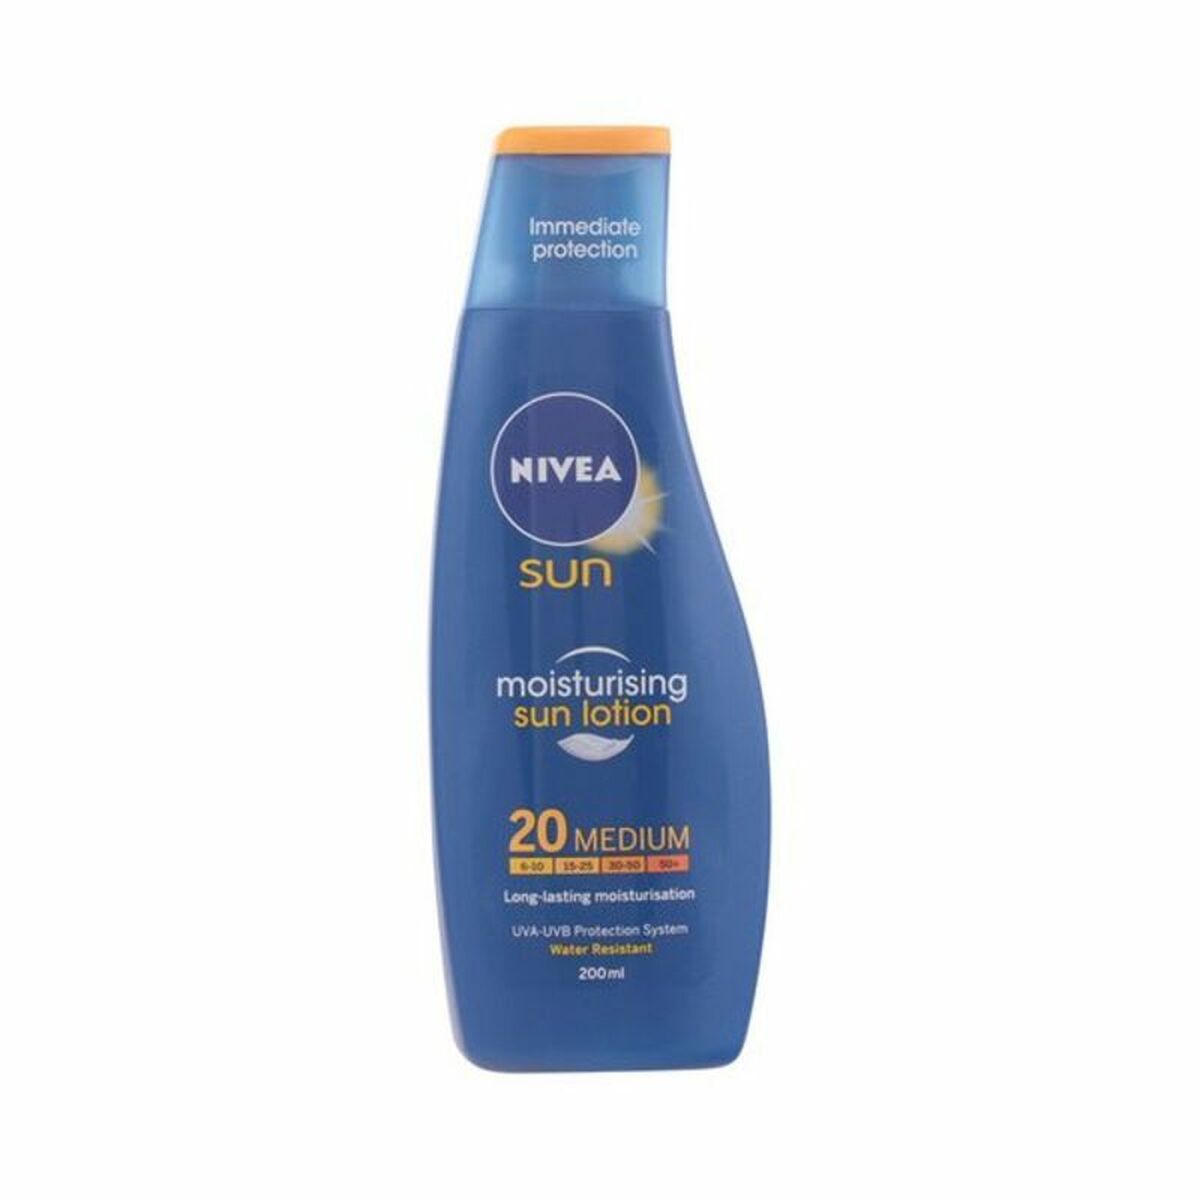 Sun Milk Spf 20 Nivea 7705 20 (200 ml)